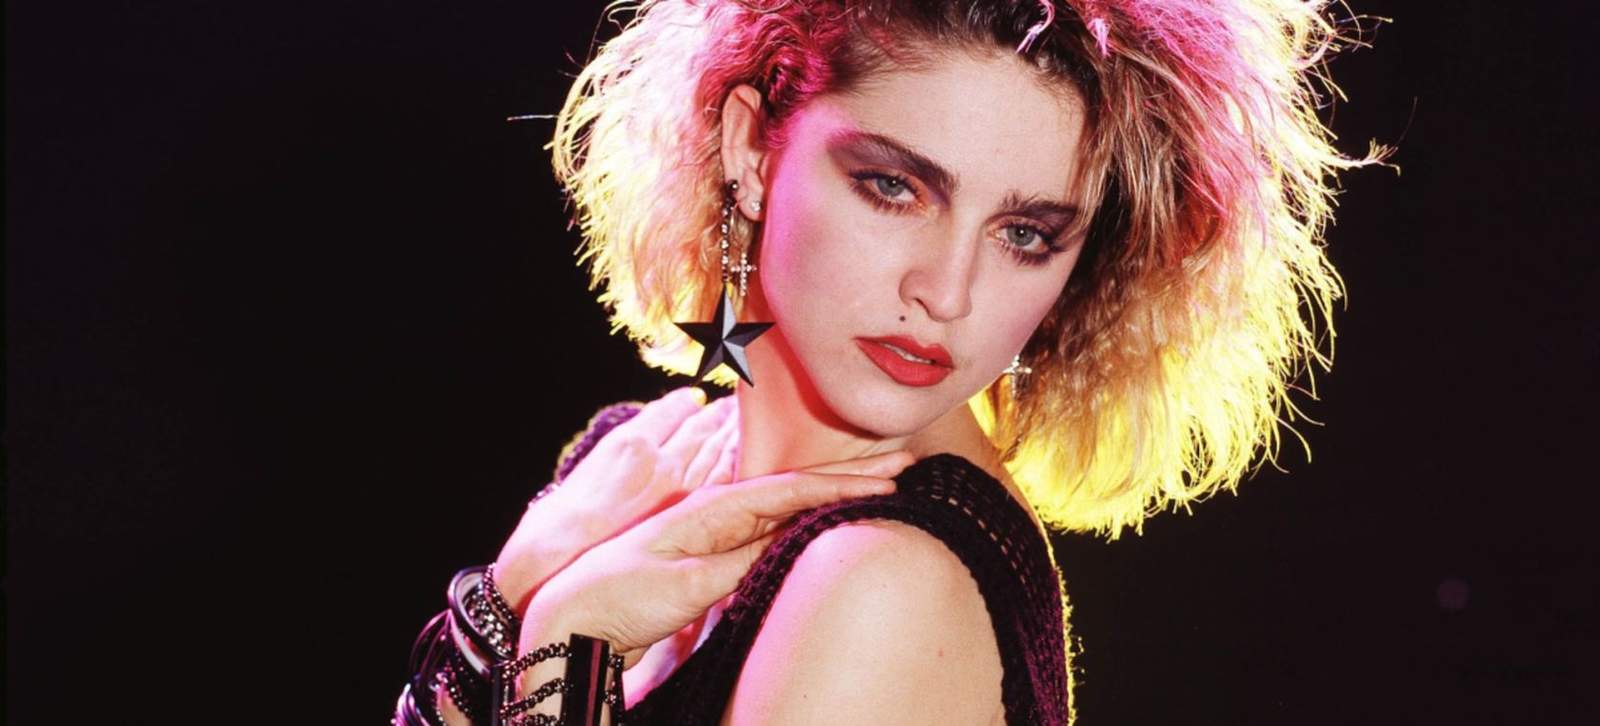 Madonna conquista con una foto de ella sin ropa a los 19 años